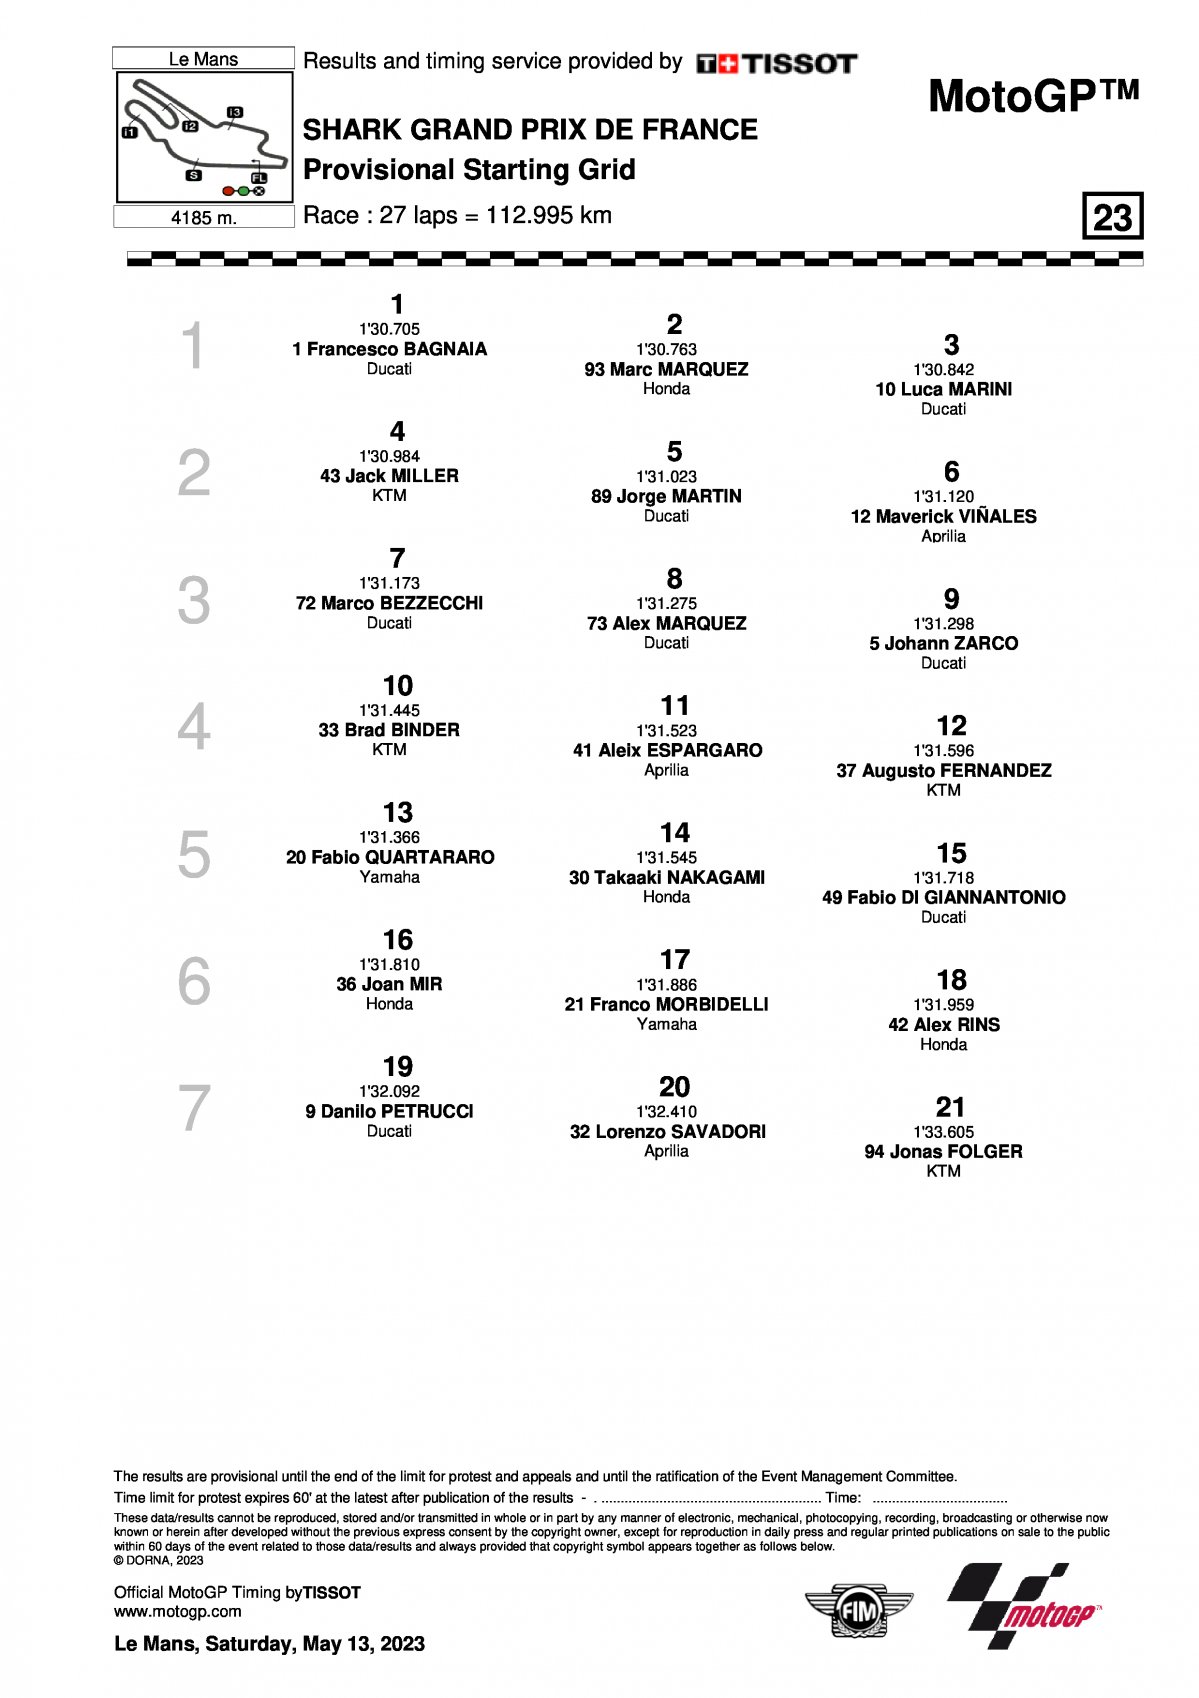 Стартовая решетка Гран-При Франции MotoGP 2023 (14/05/2023)